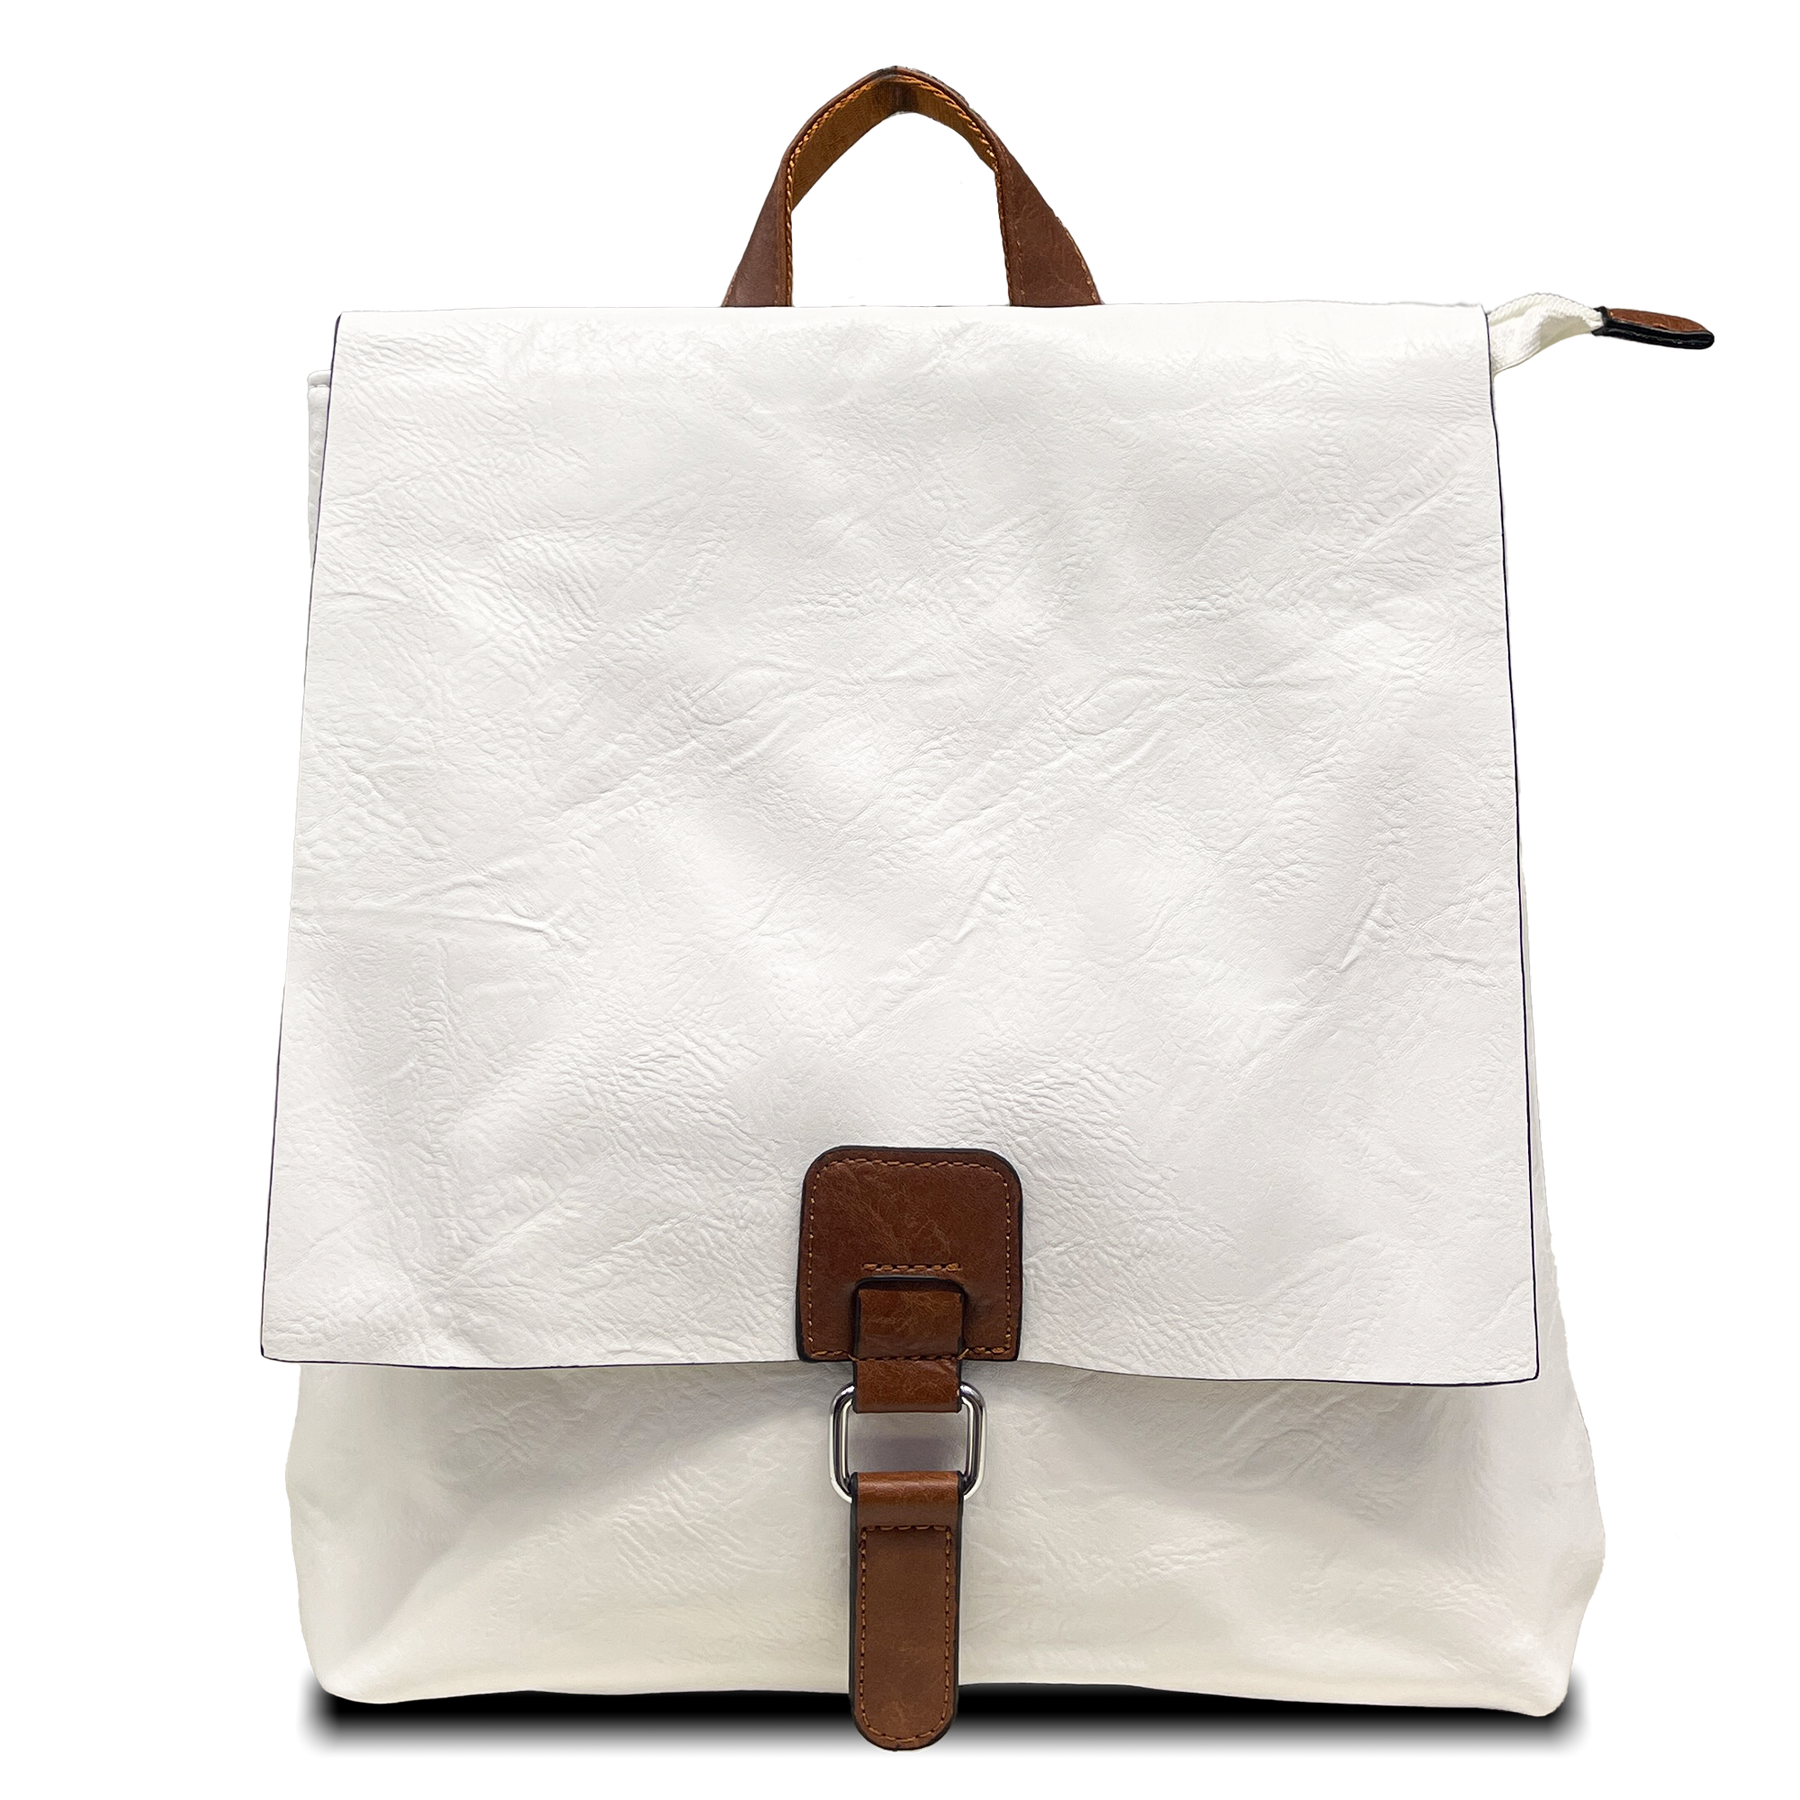 2-w-1 transformowalny plecak: styl vintage, podwójnie użyj torby z paskiem na ramię i plecakiem